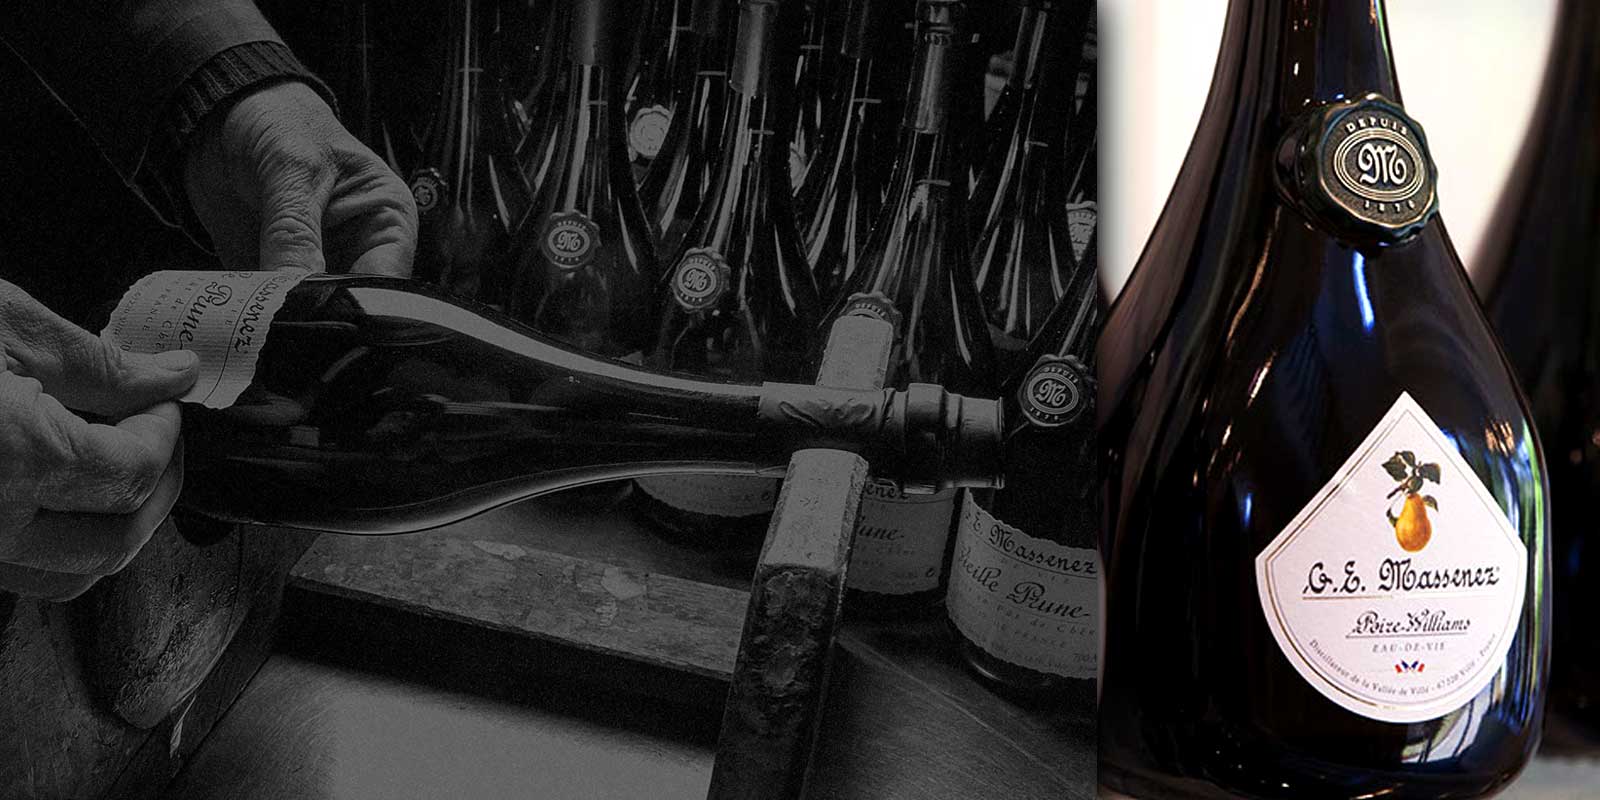 Hienoja alkoholijuomia Massenezin tislaamosta Massenezin tislaamon historia ulottuu vuoteen 1870, jolloin Jean-Baptiste Massenez tyoskenteli tislaajana Urbeisin Val de Villessa.